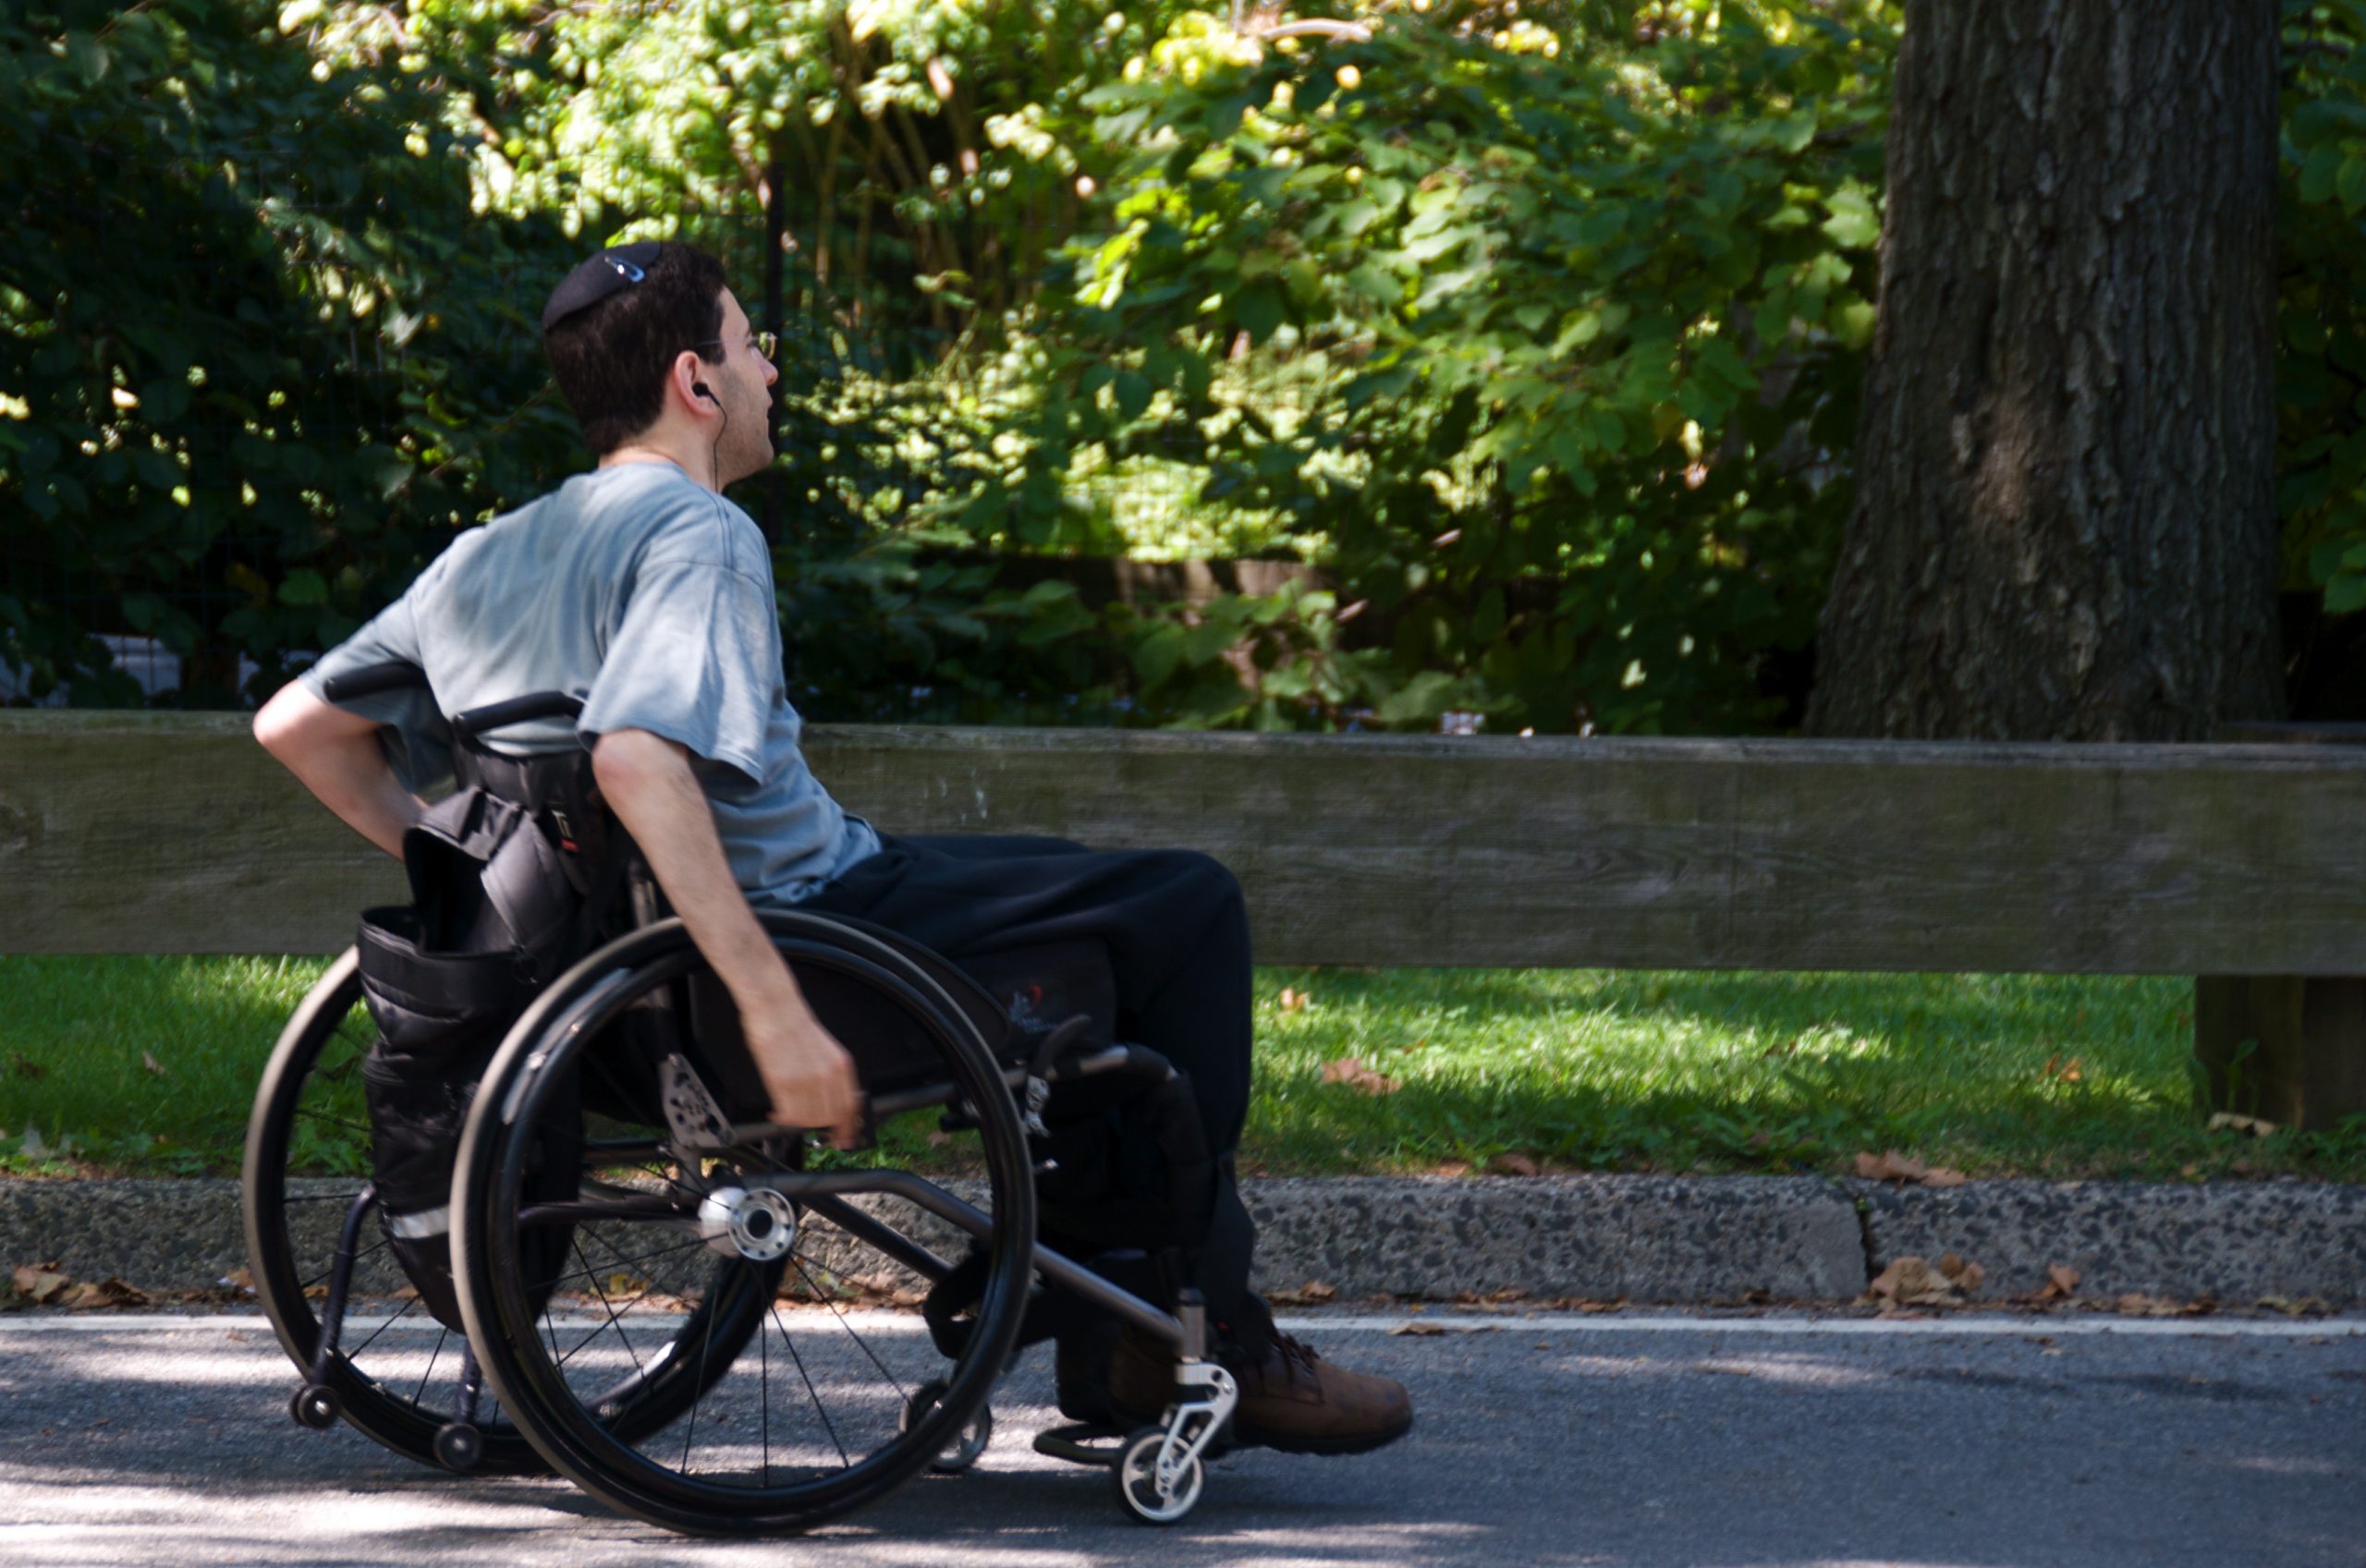 Коляска инвалидам 2 группы. Челик в инвальдной коляске. Коляска для инвалидов. Человек на коляске. Мужчина инвалид.